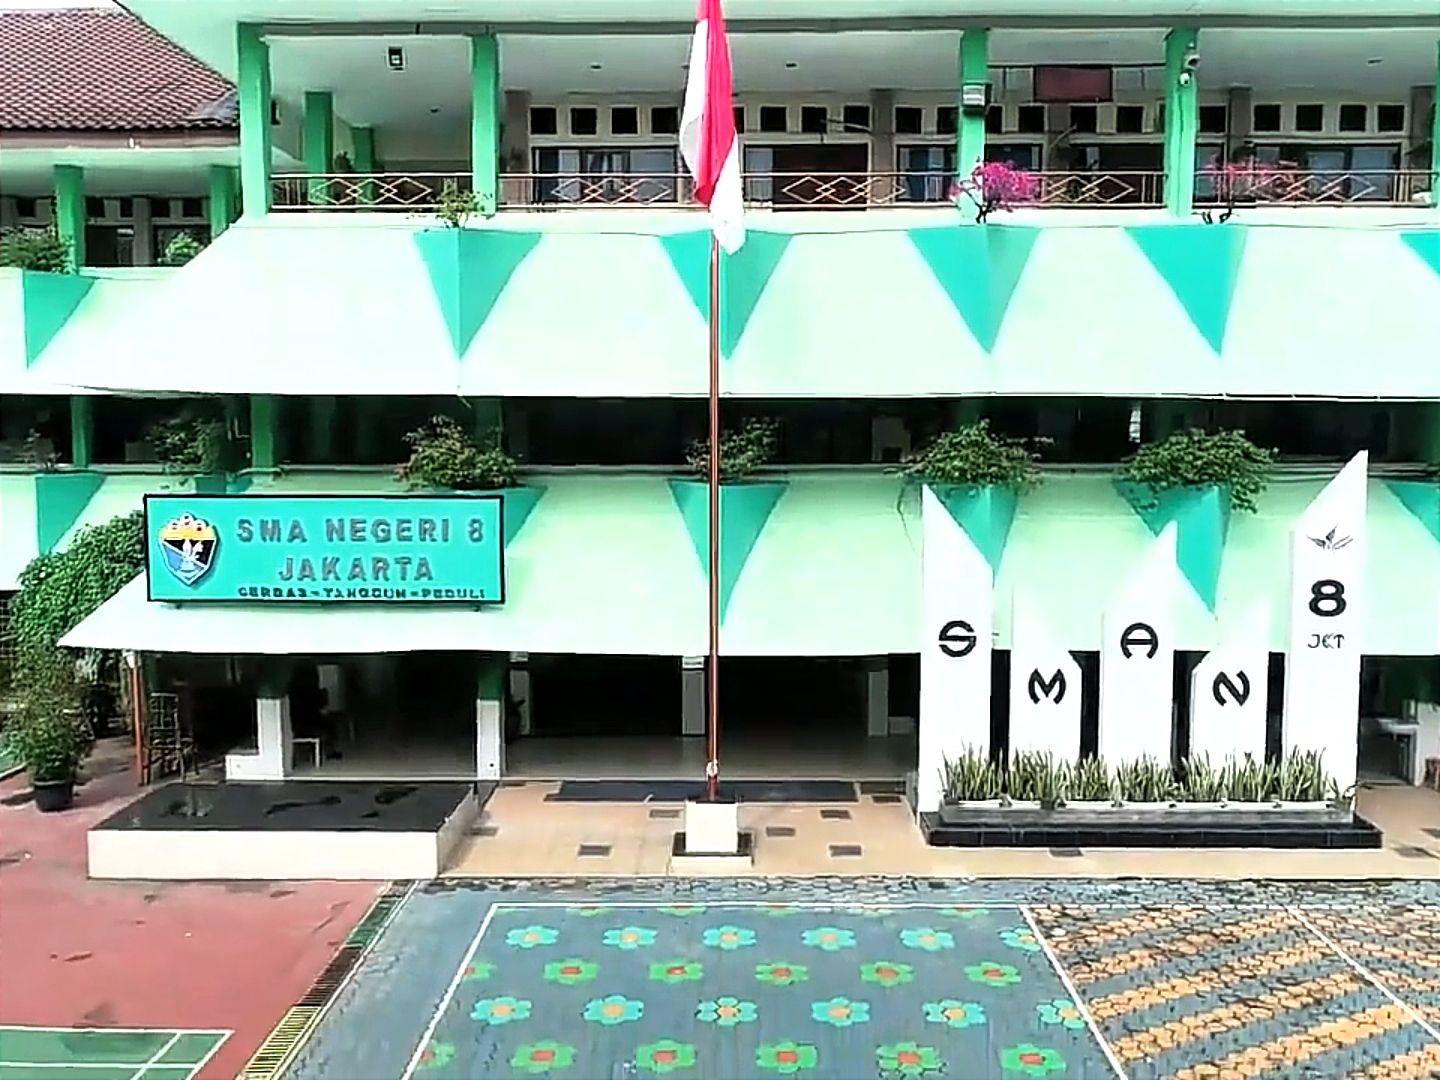 Daftar Sekolah SMA Terbaik DKI Jakarta, Ranking Teratas di Jakarta